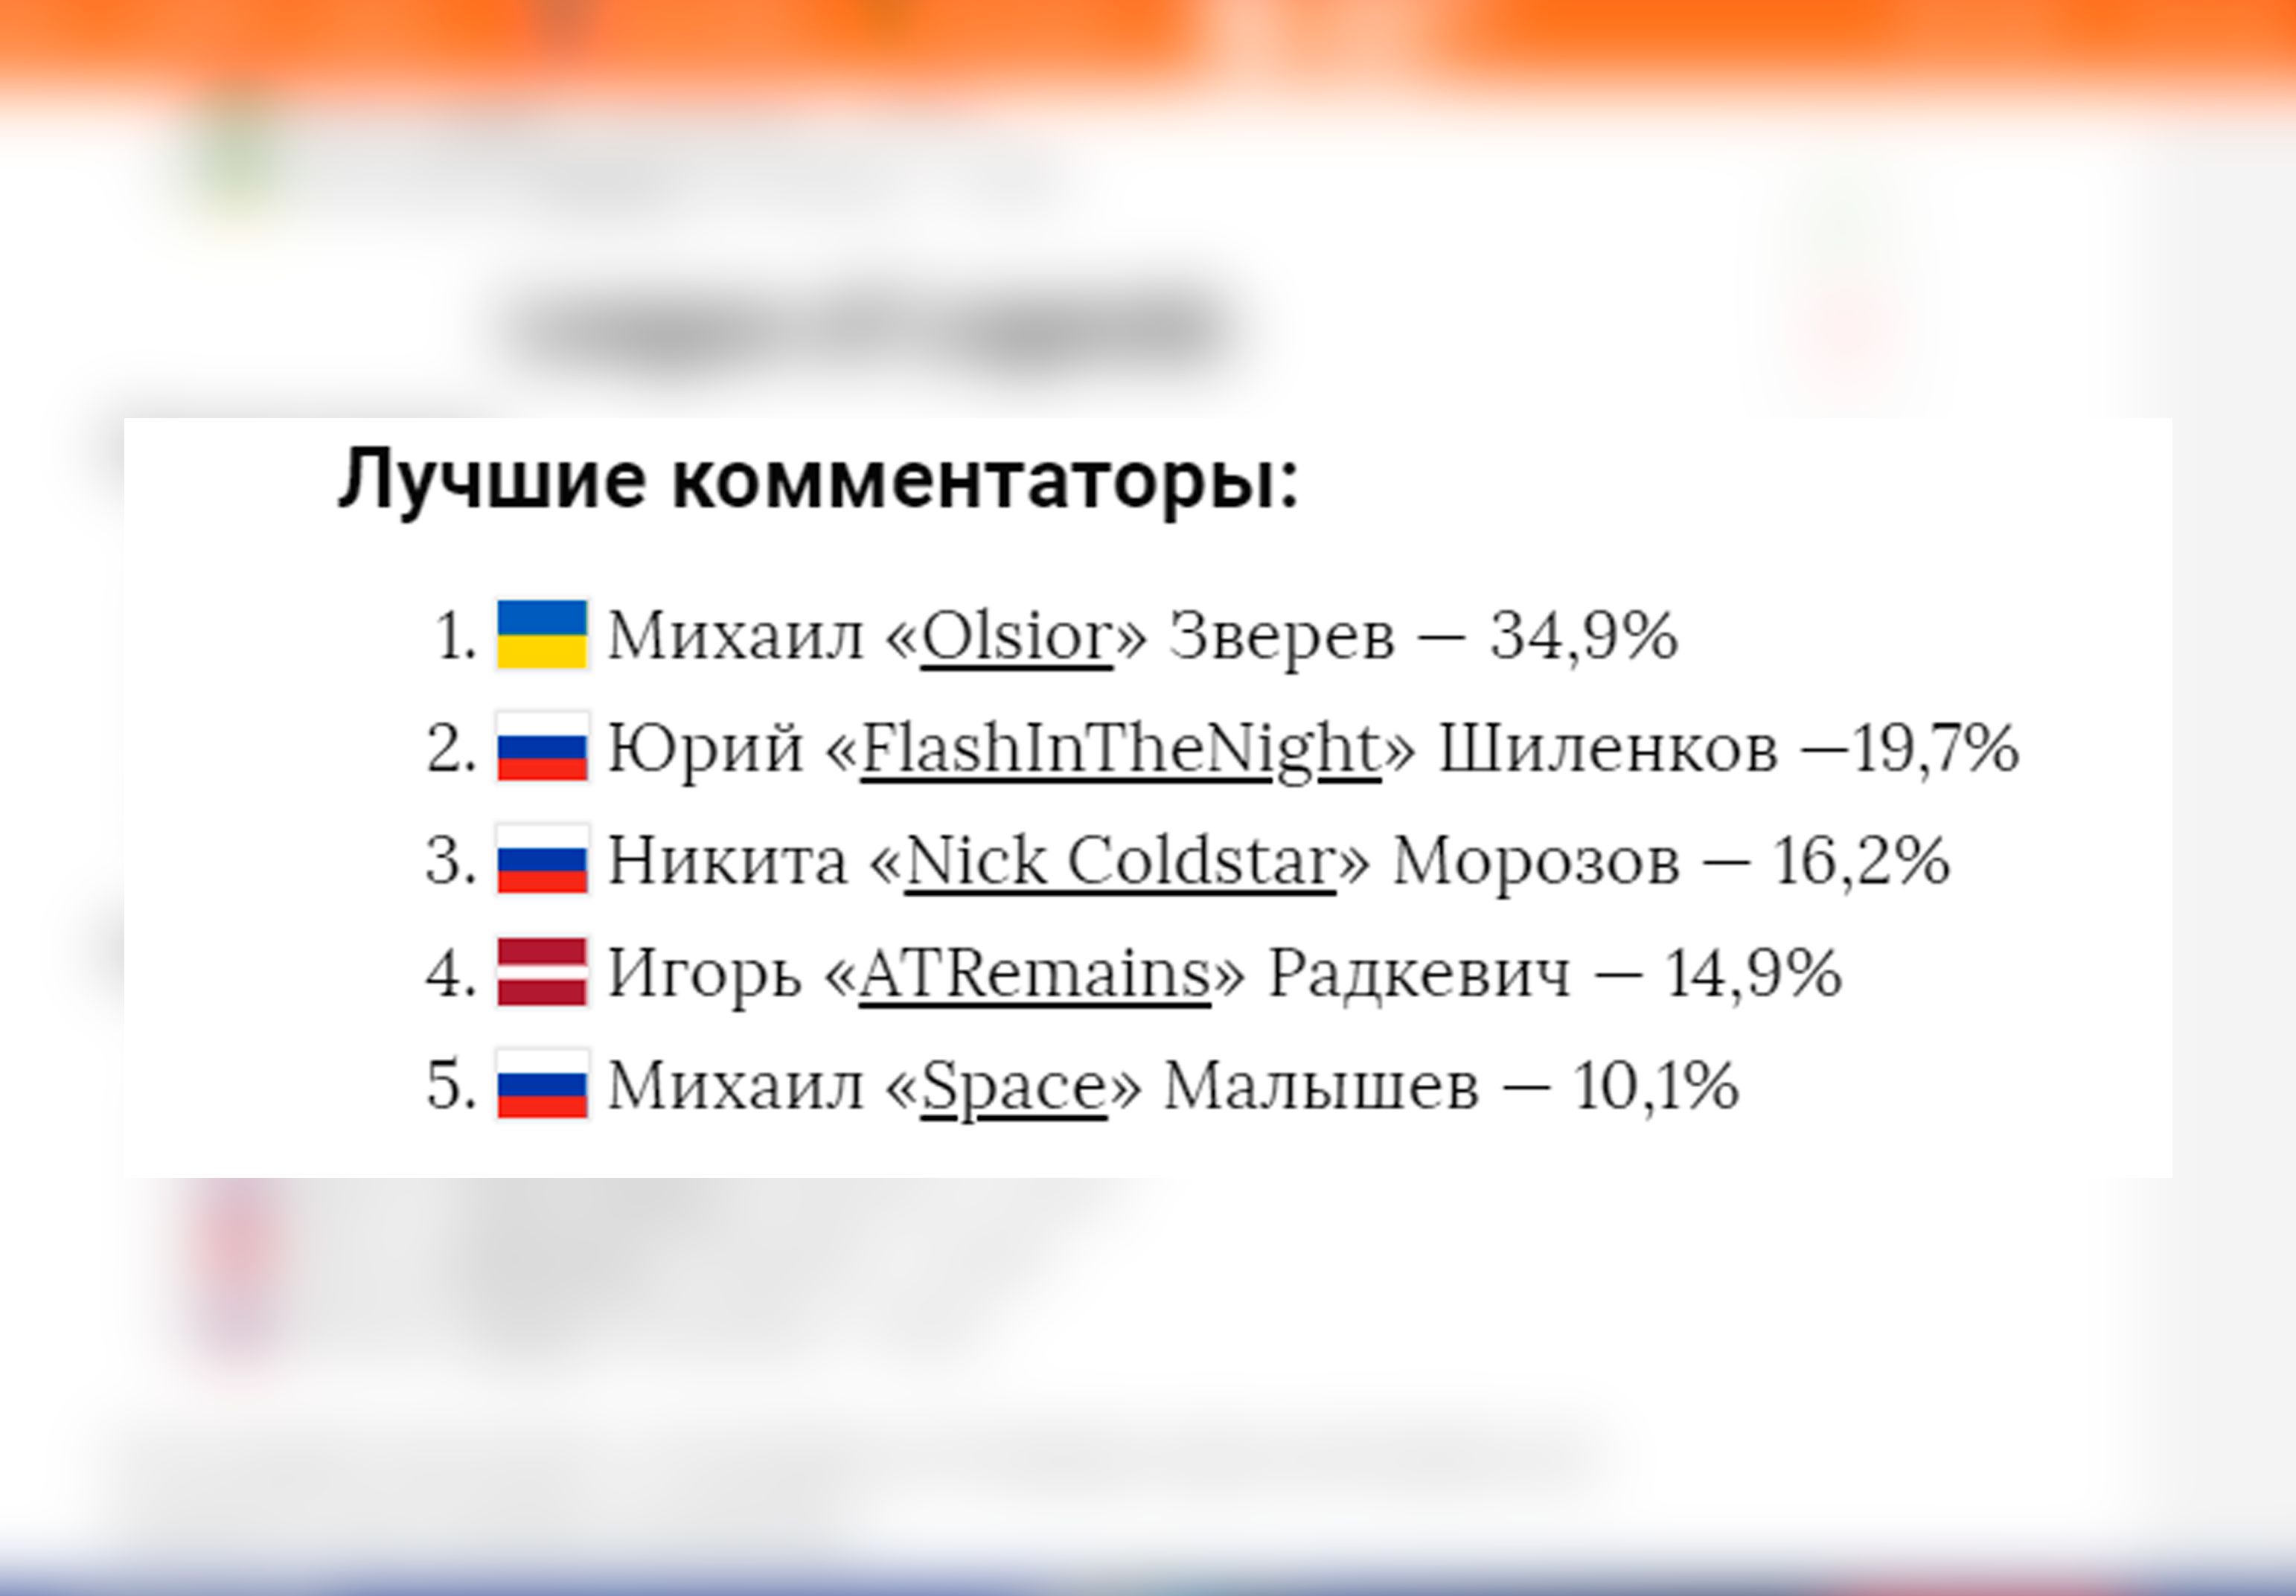 В 2017-м году Ols1or даже занял первое место среди комментаторов League of Legends по мнению Cybersport.ru... и через семь месяцев ушел из Riot 😂